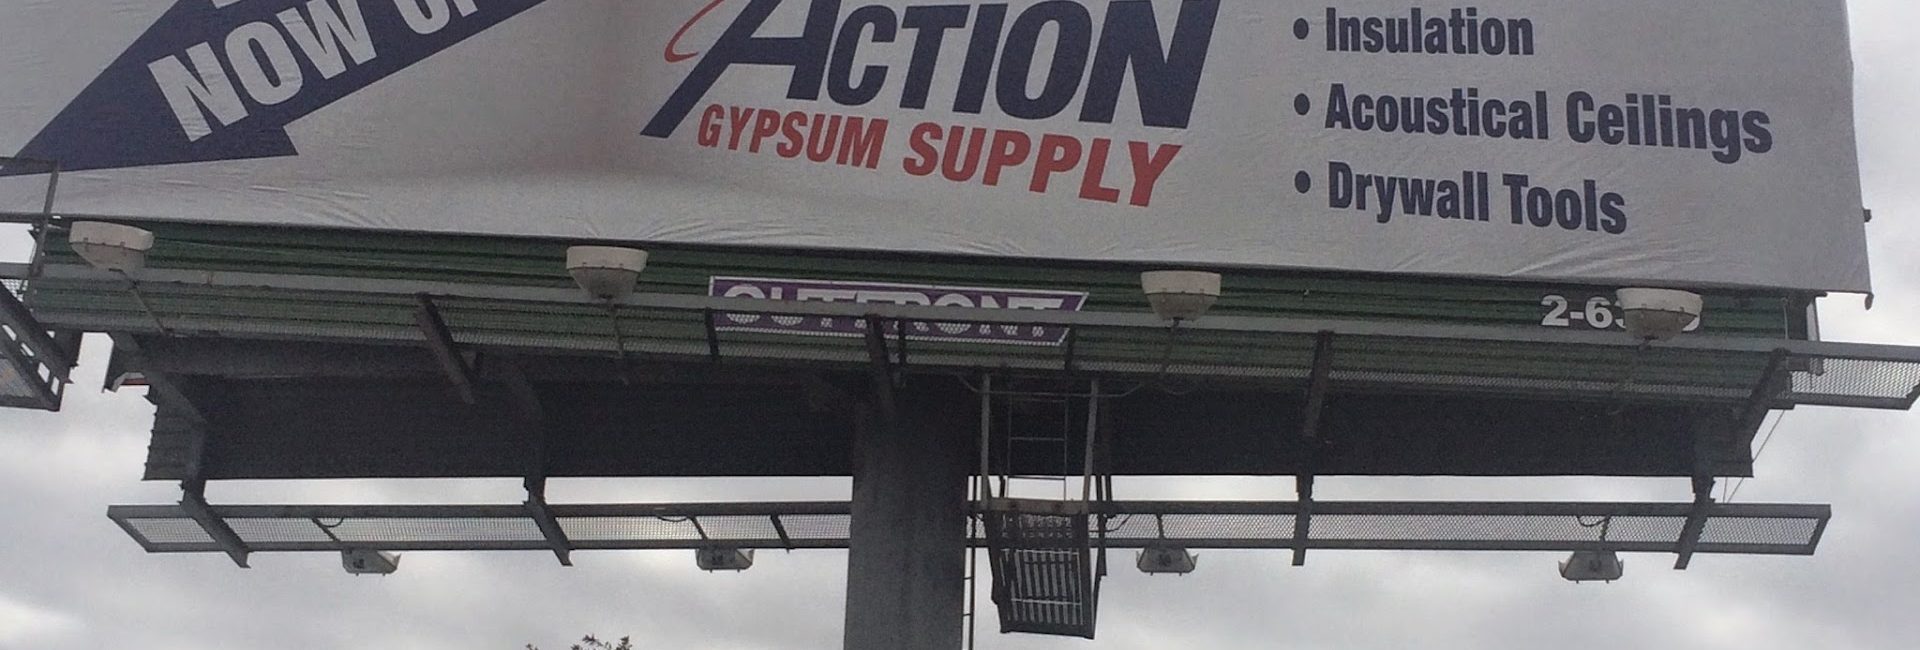 Action Gypsum Supply 2